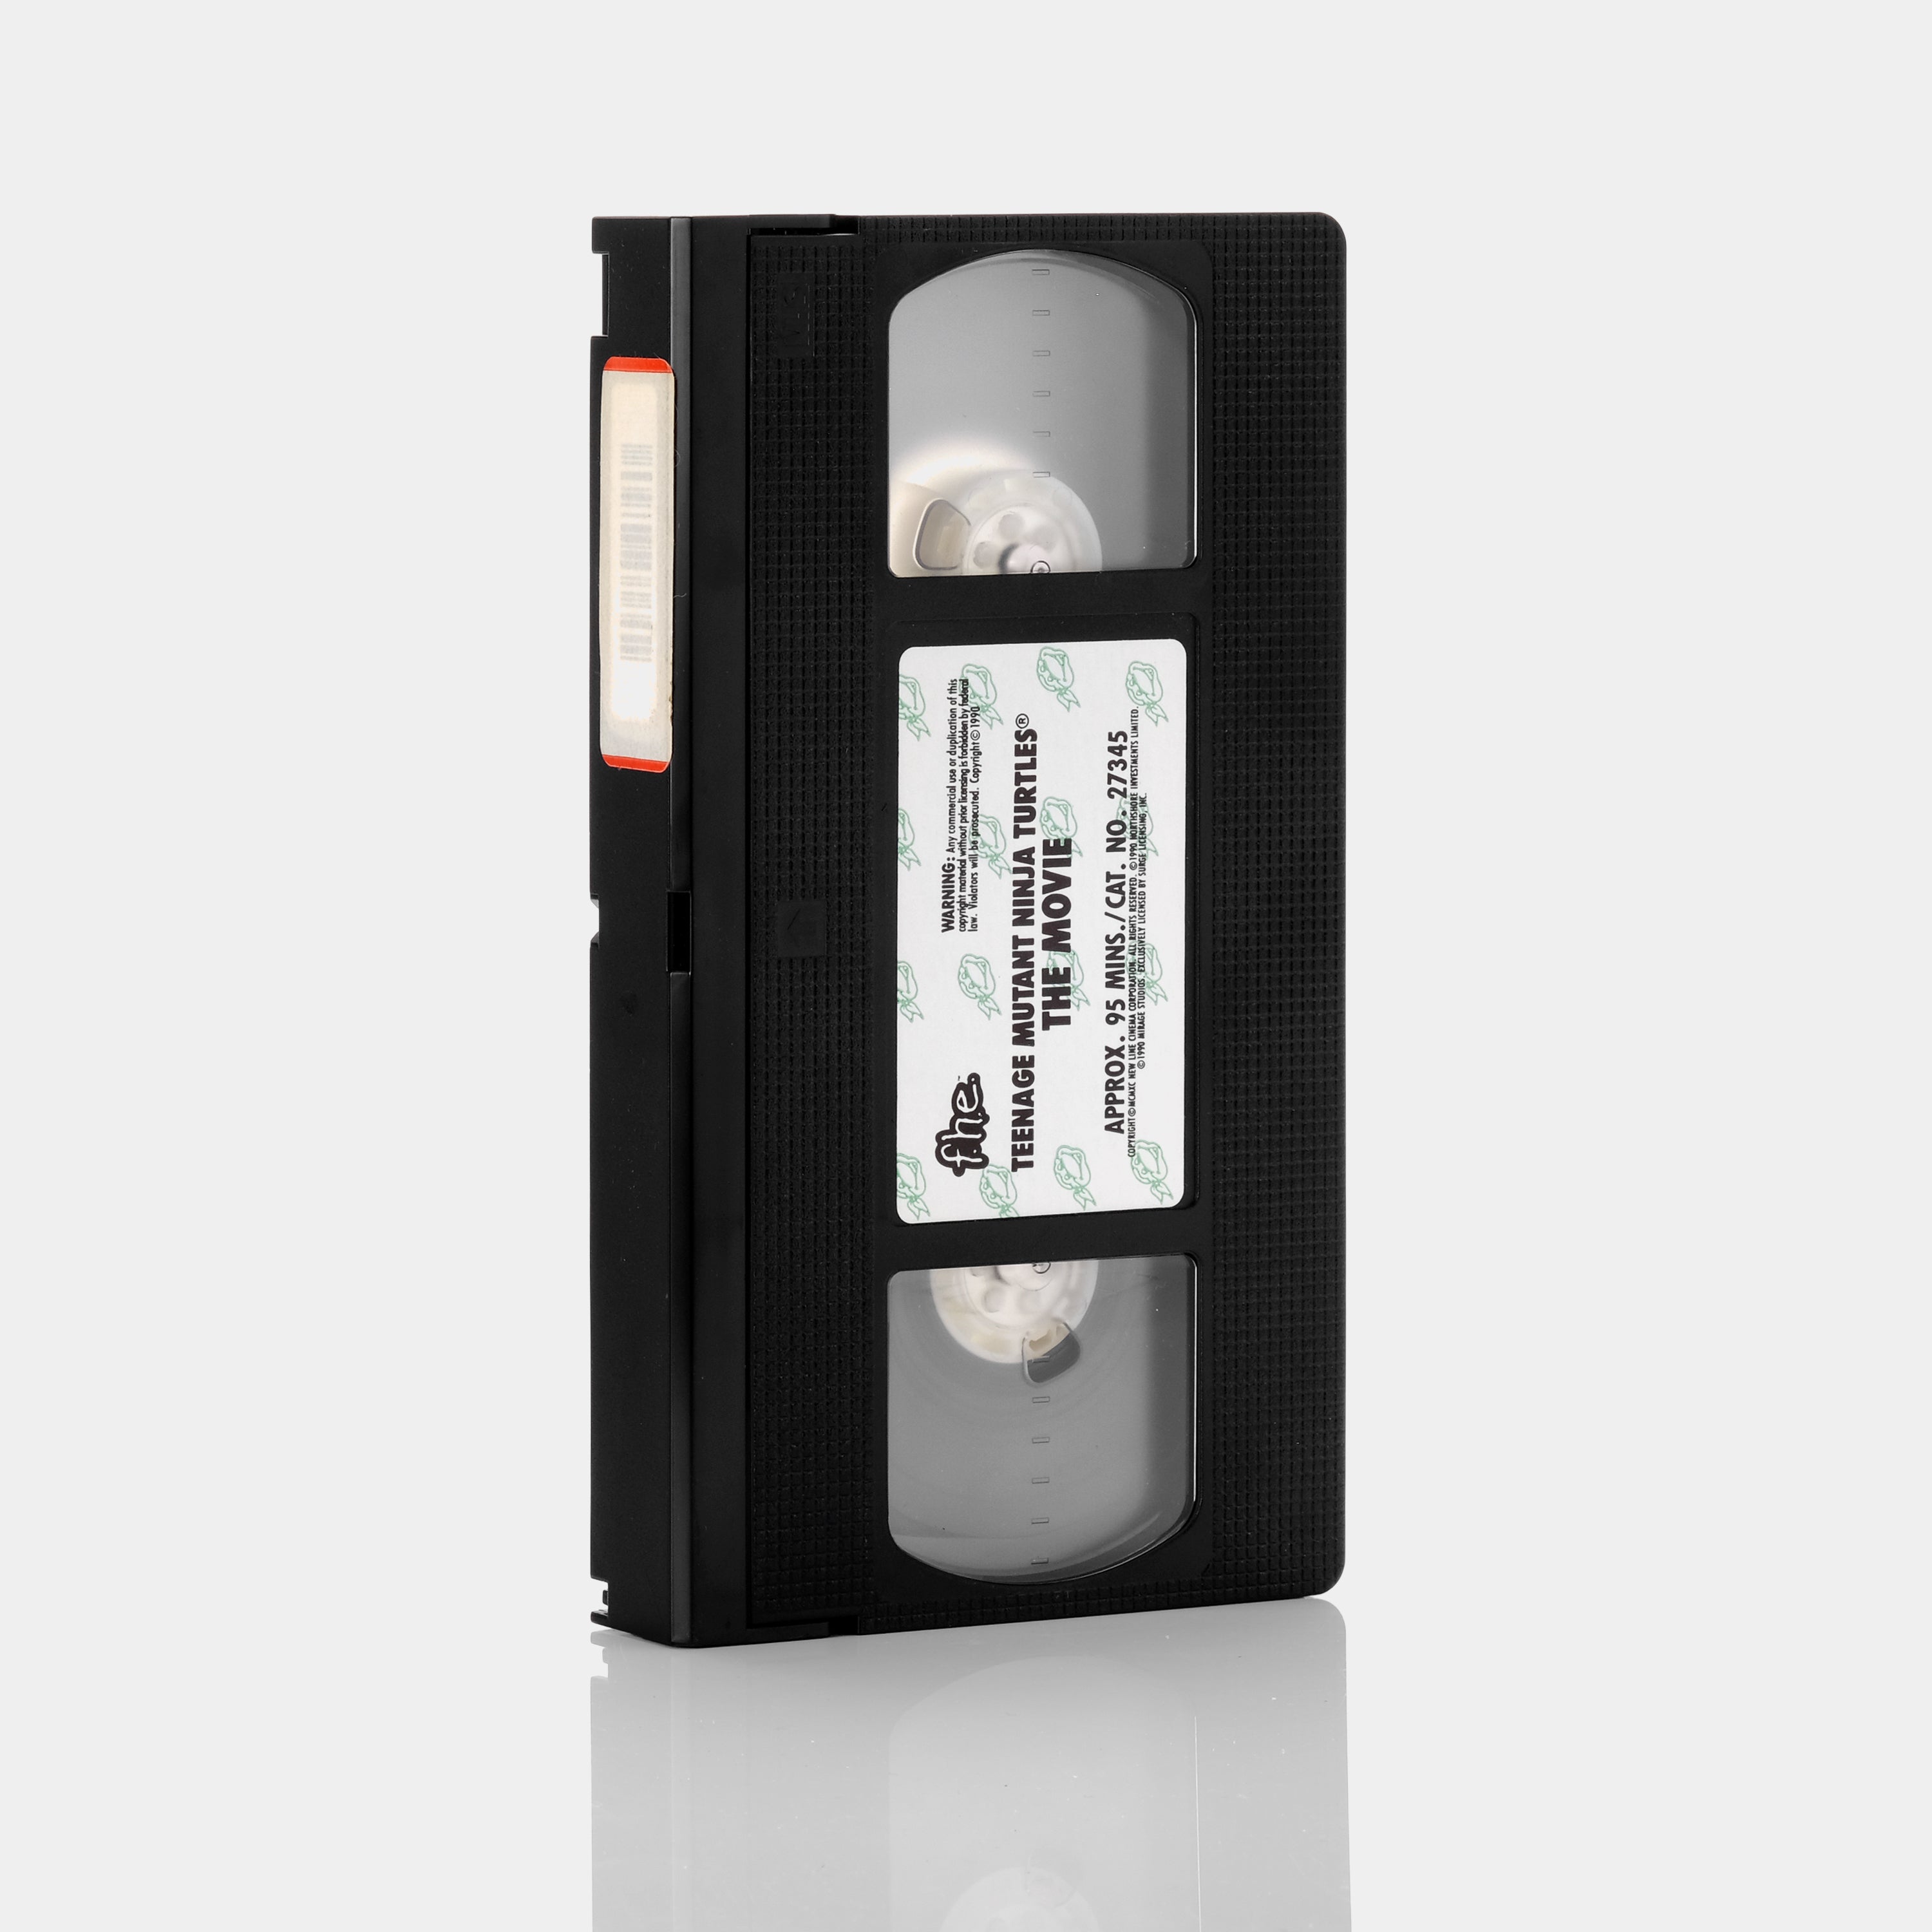 Teenage Mutant Ninja Turtles VHS Tape